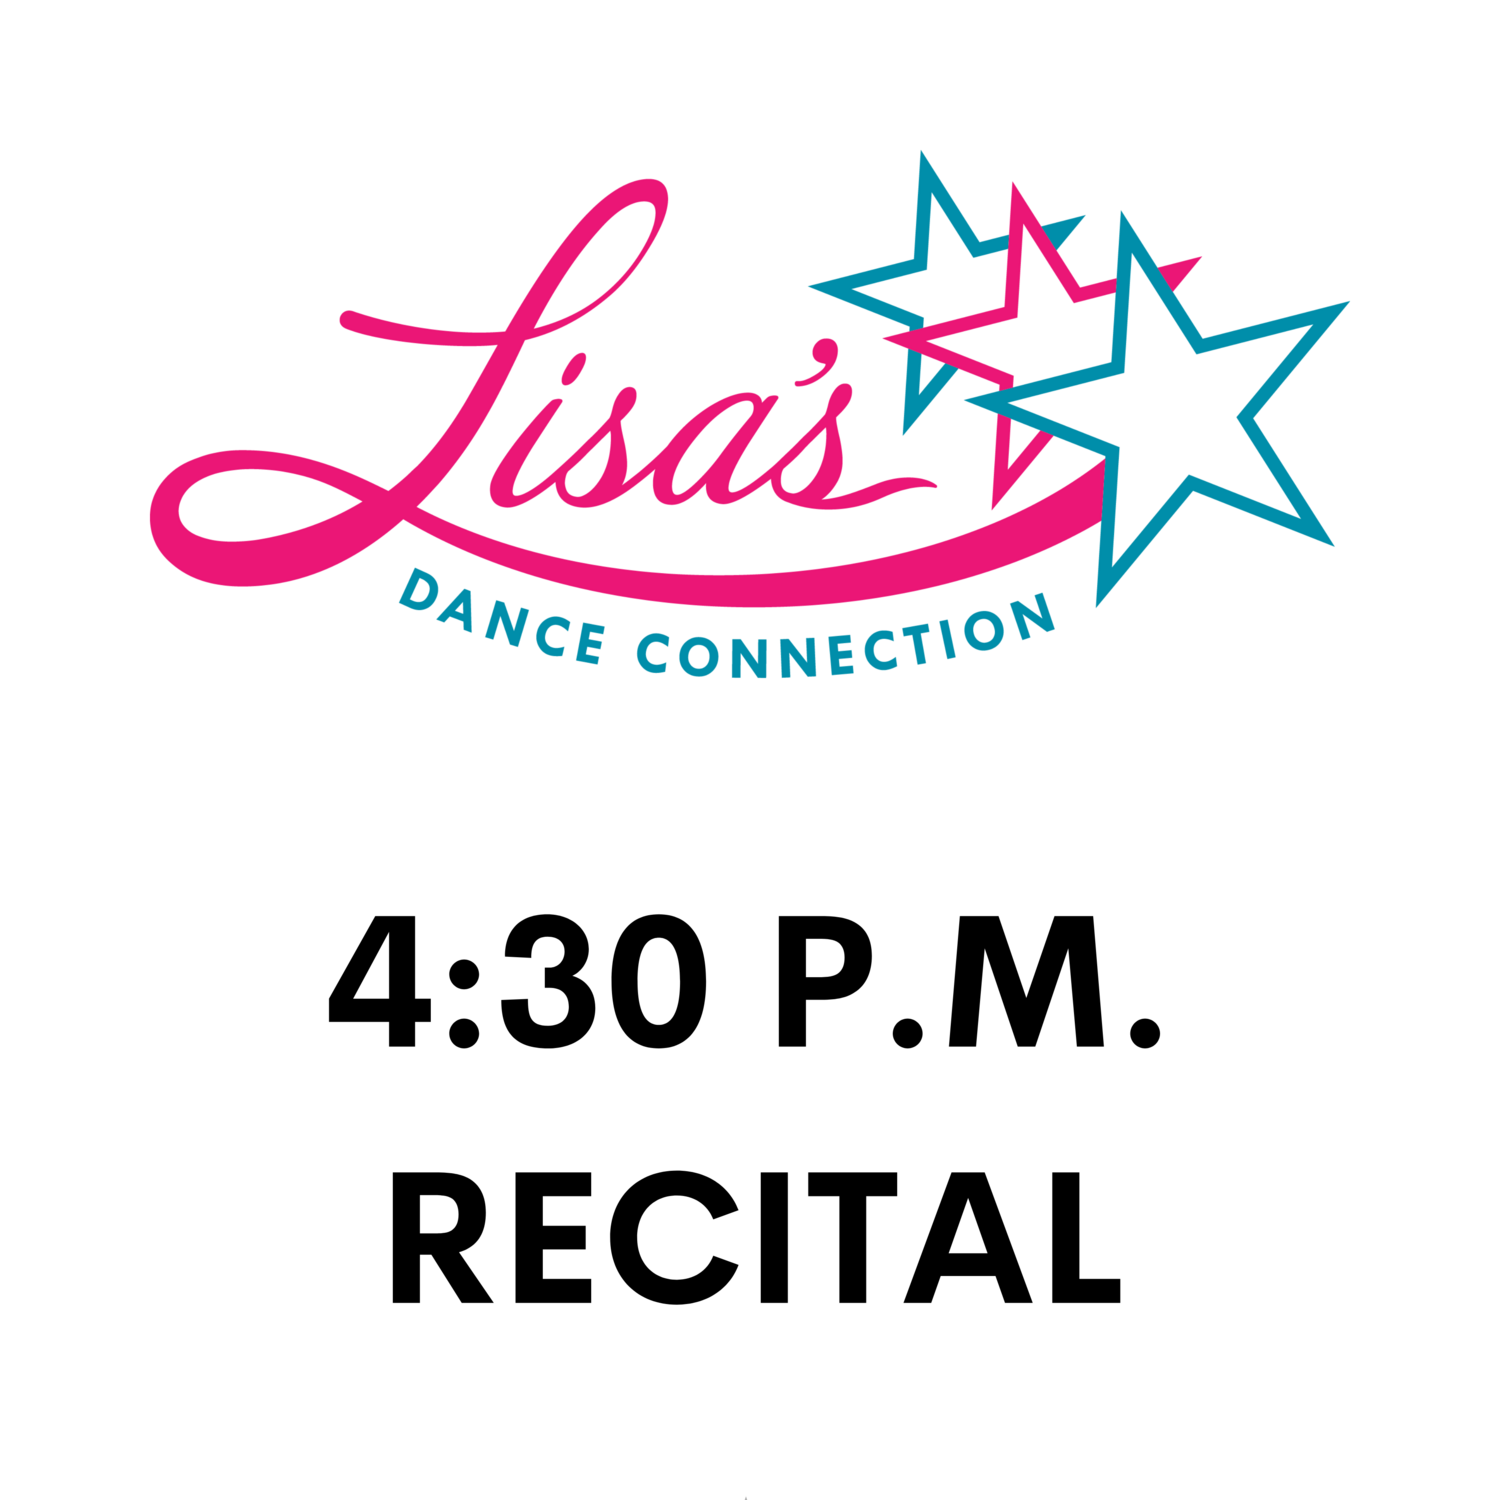 4:30 P.M. Recital Digital Download